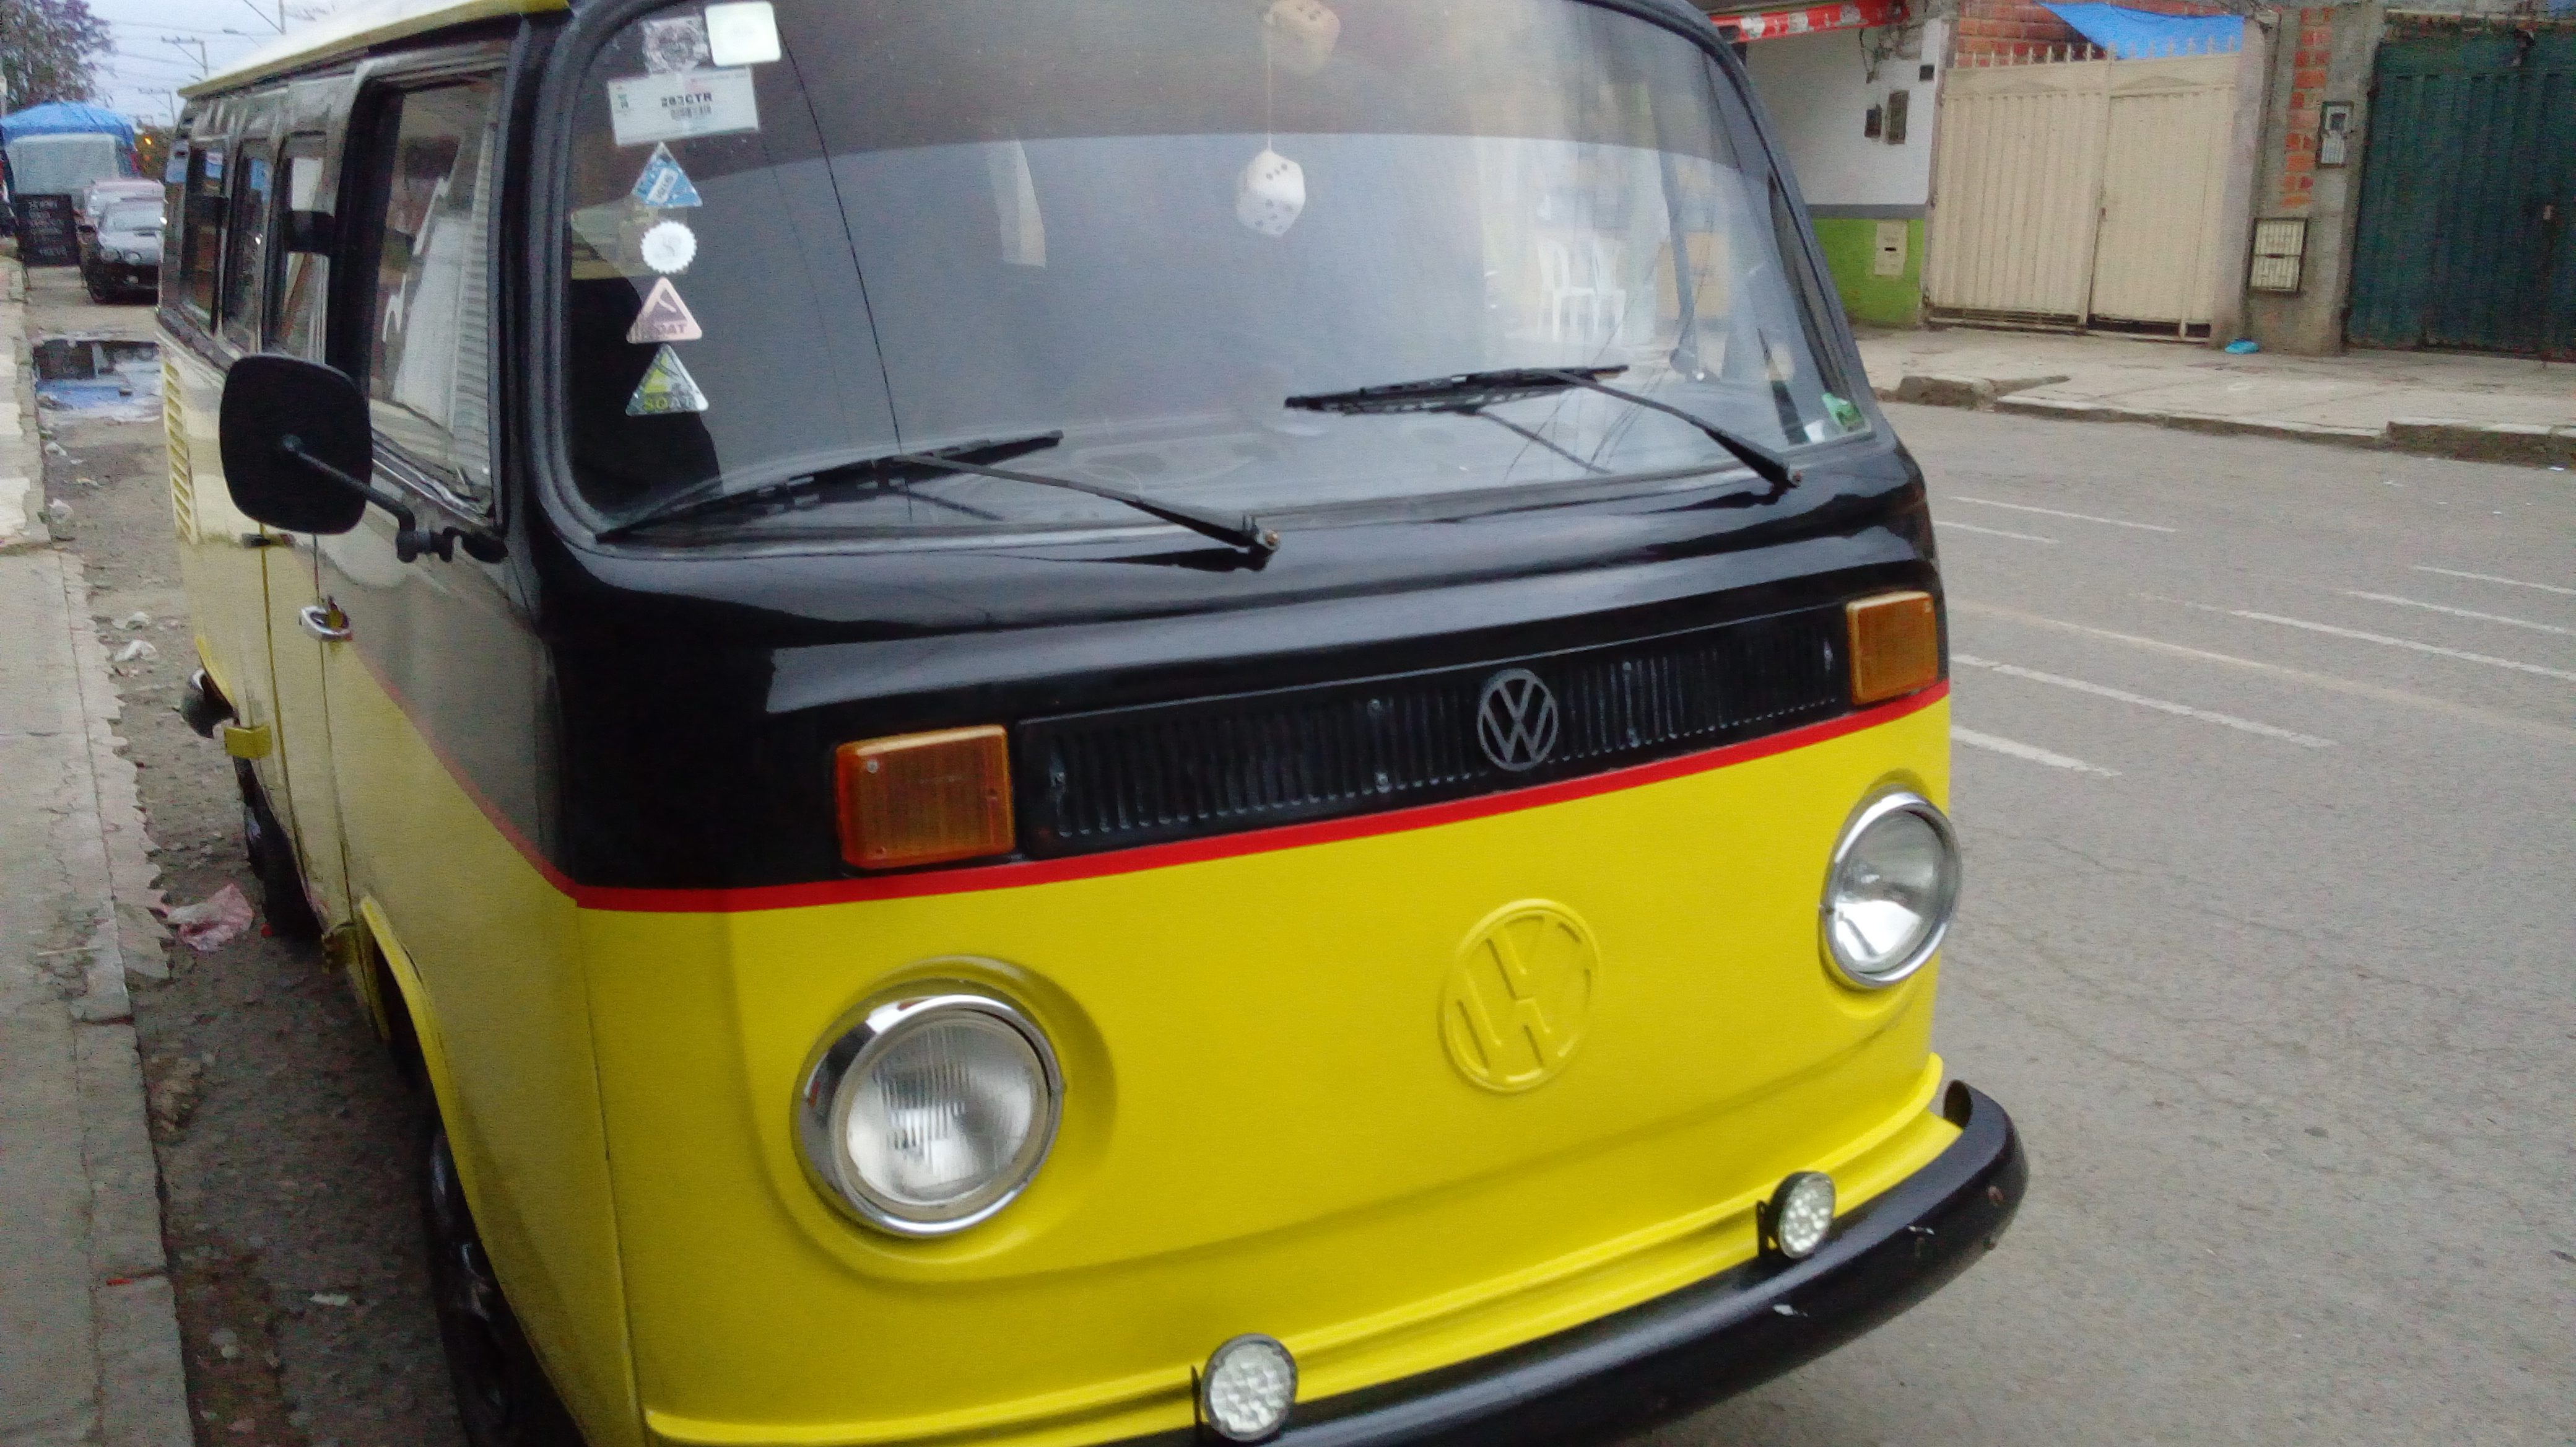 VW Bully gelb-schwarz